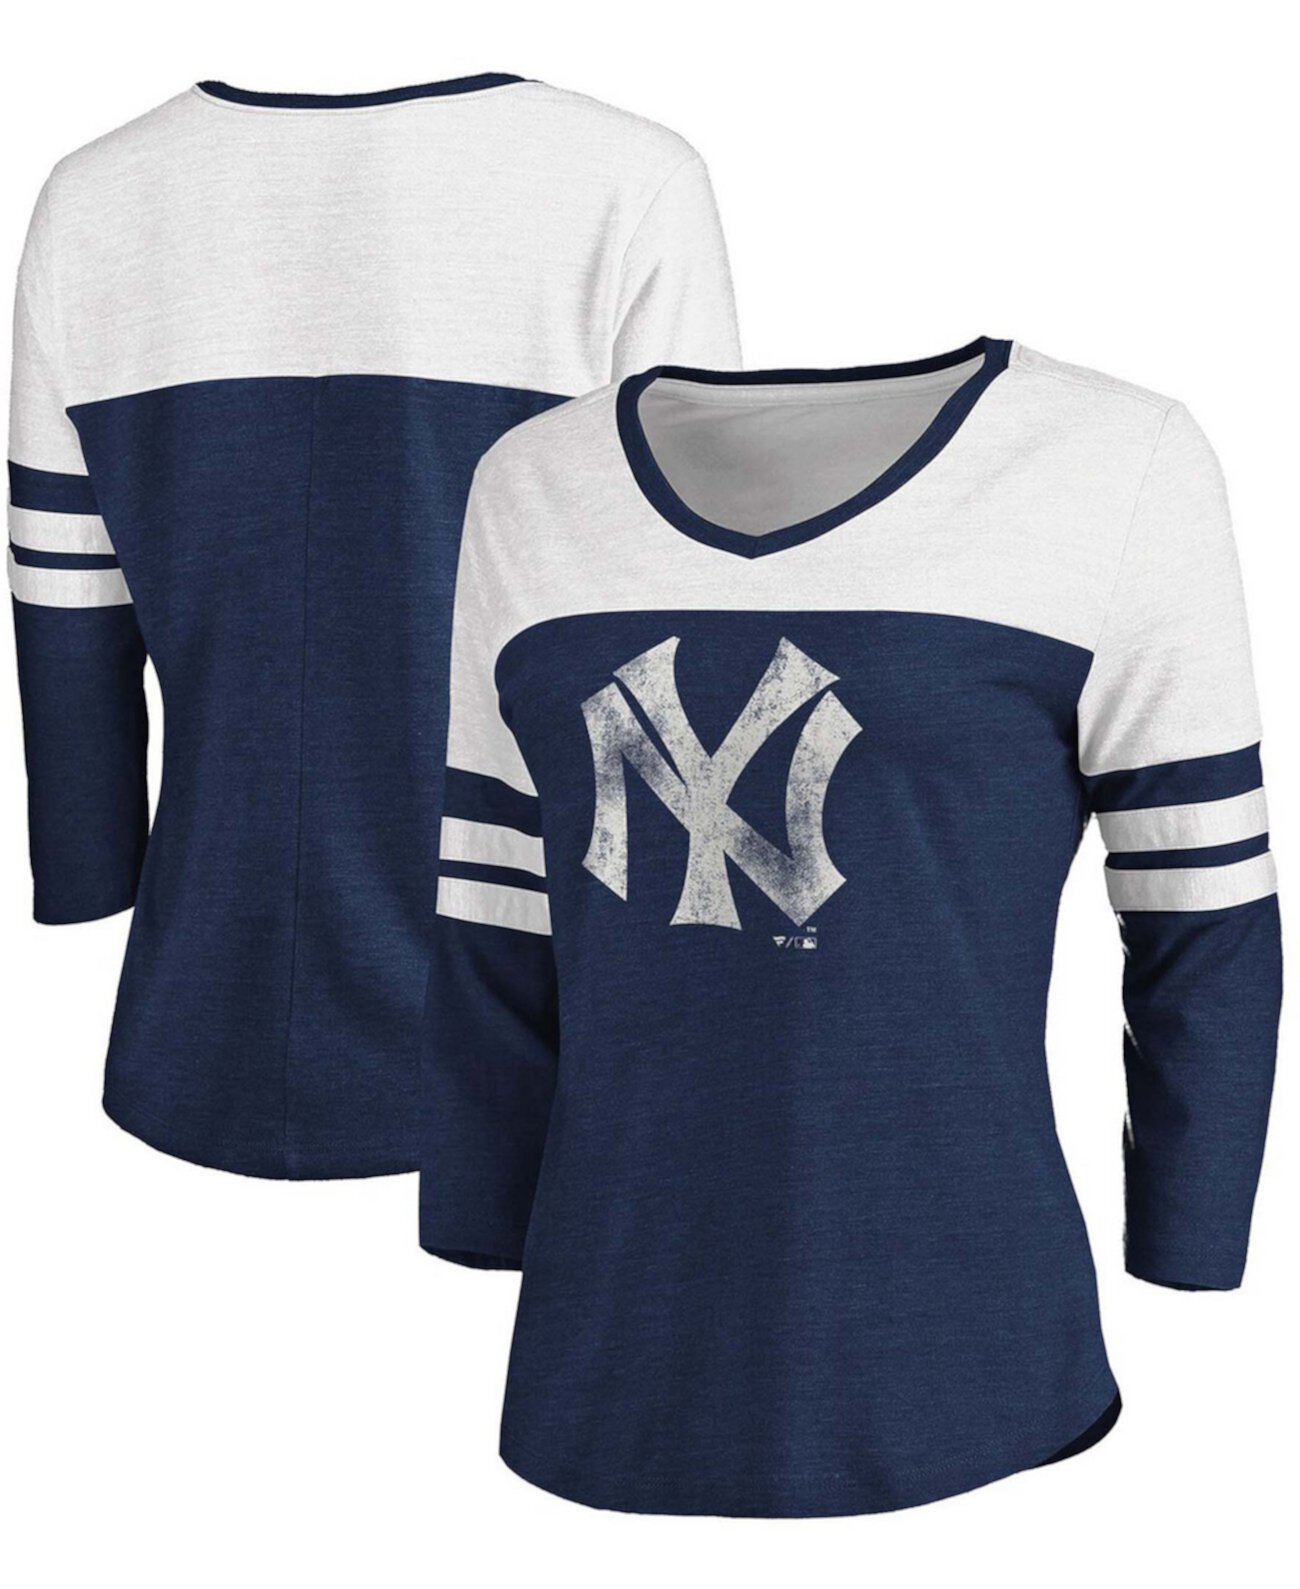 Женская темно-синяя белая футболка New York Yankees с двухцветными потертостями из коллекции Cooperstown, трехцветная футболка с рукавами 3/4 и V-образным вырезом Fanatics